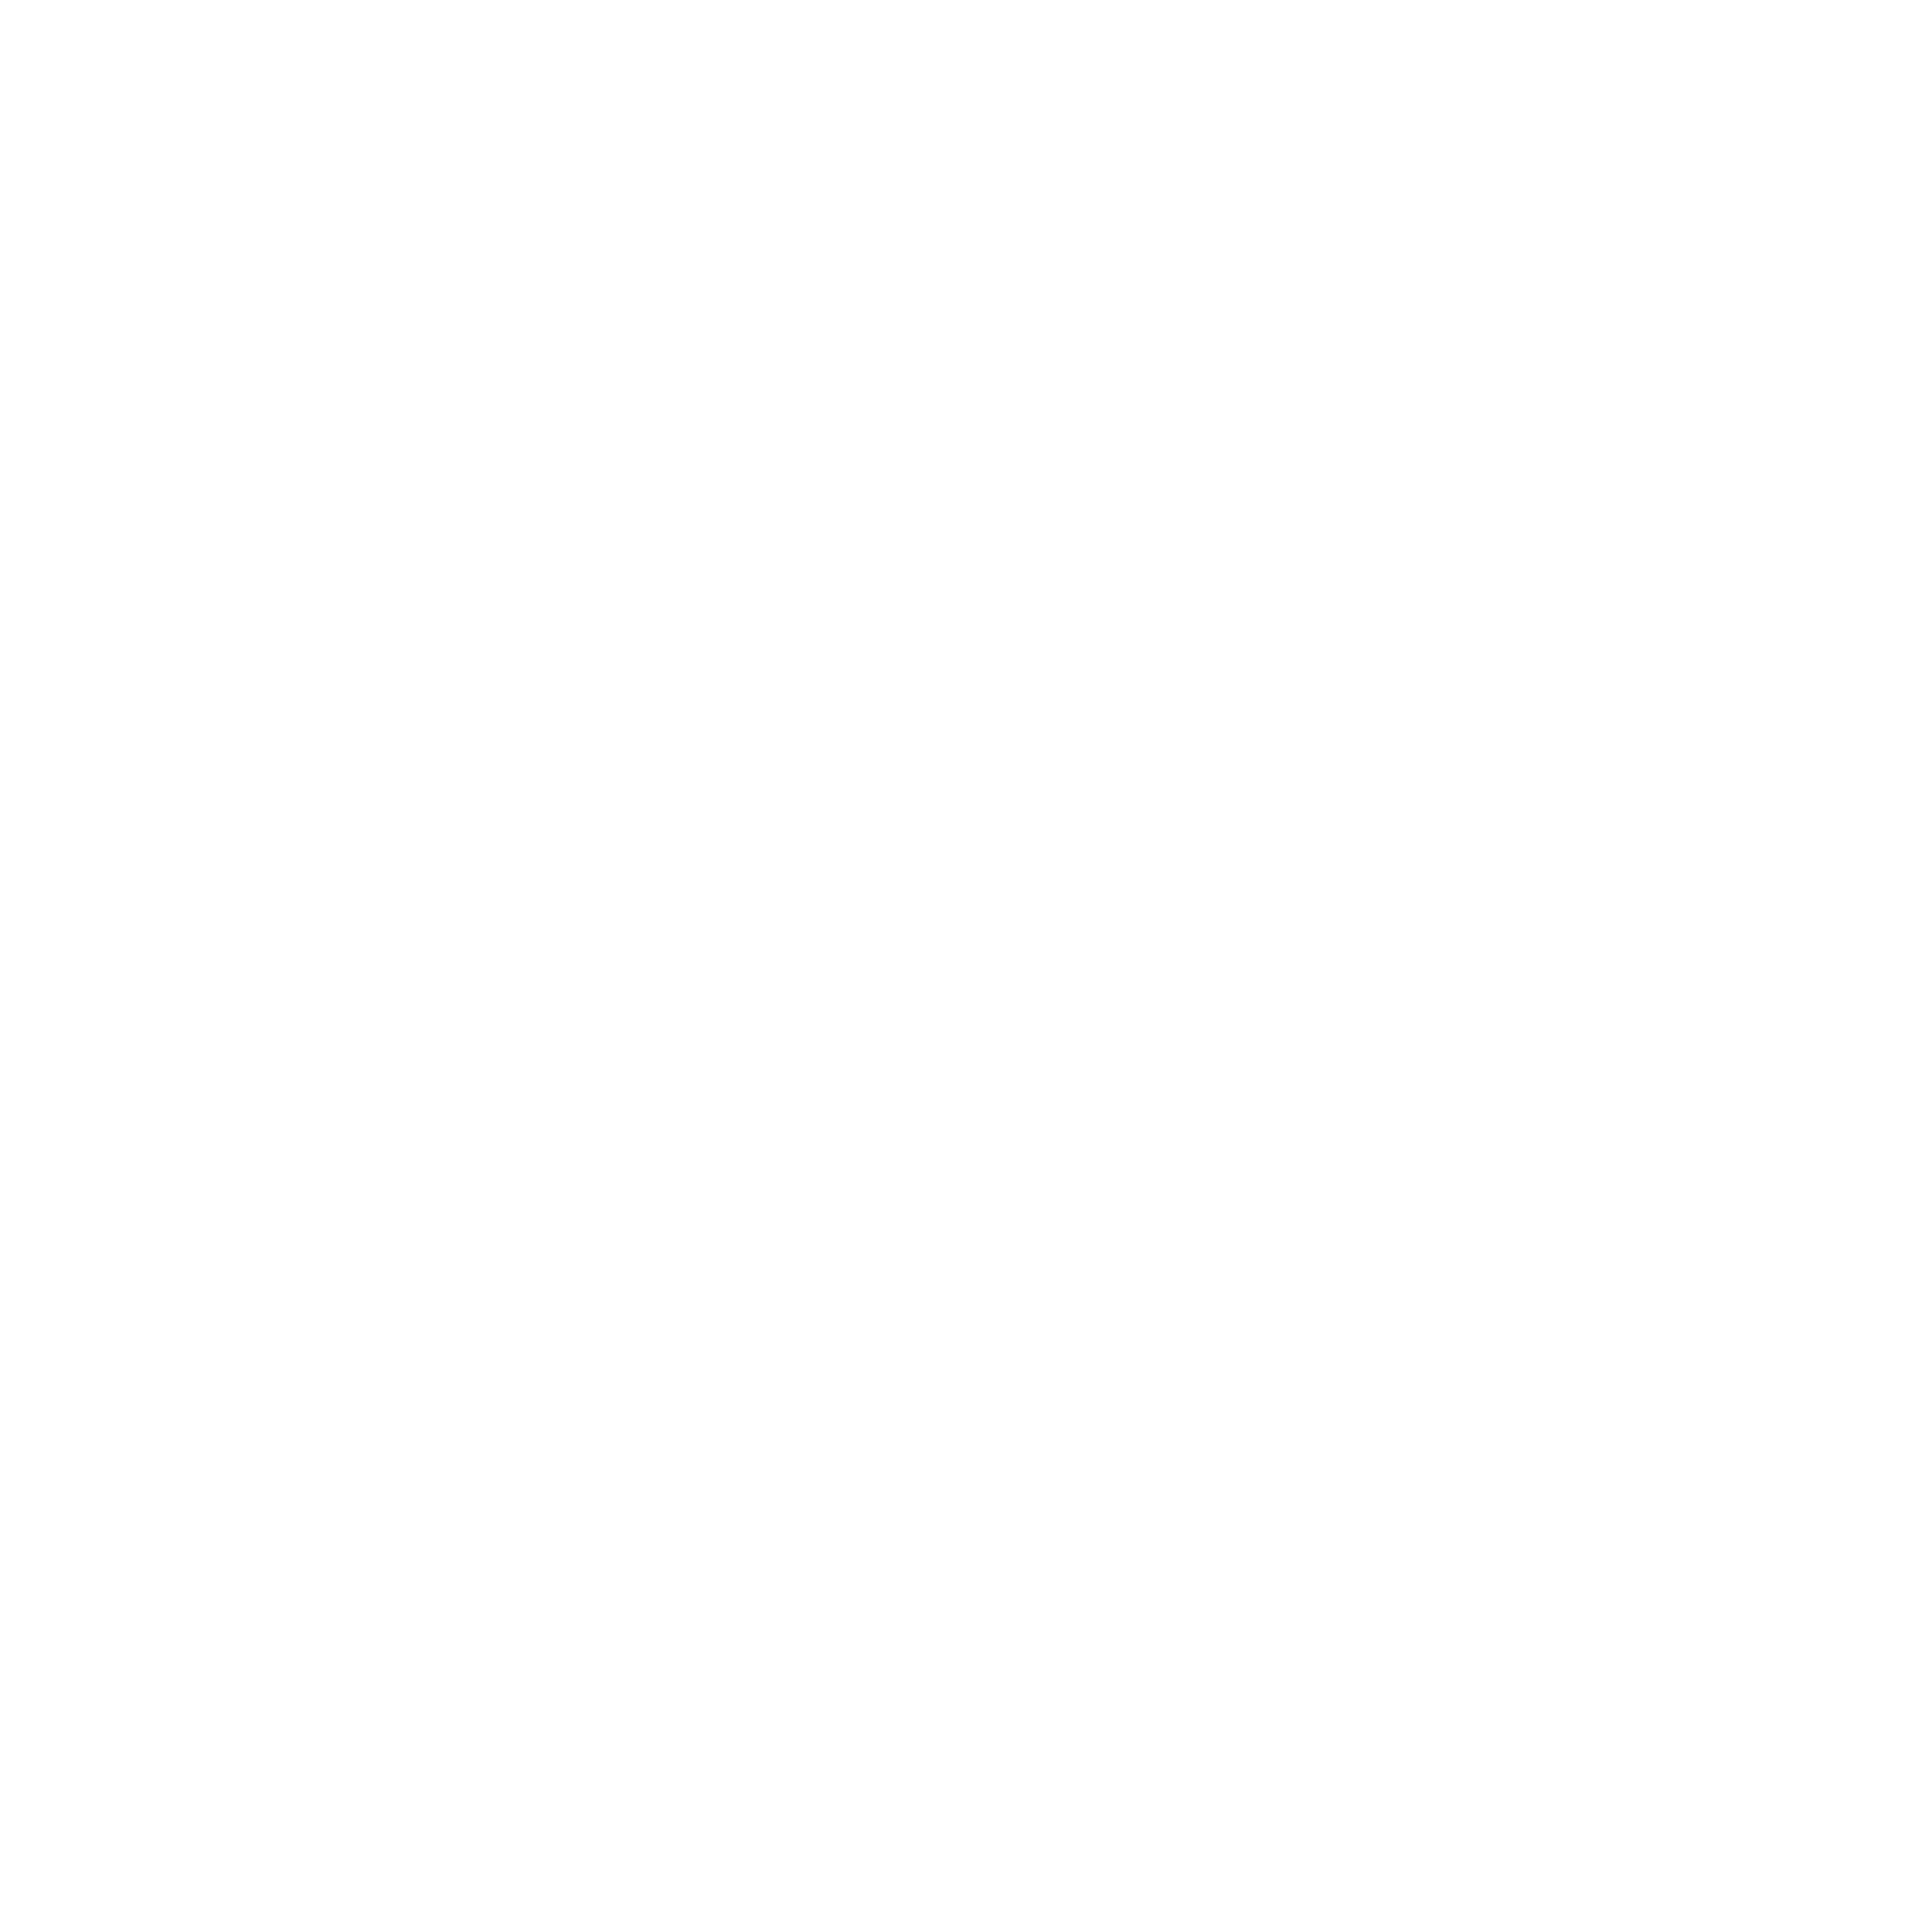 Sumar Galicia Logo Transparent Picture